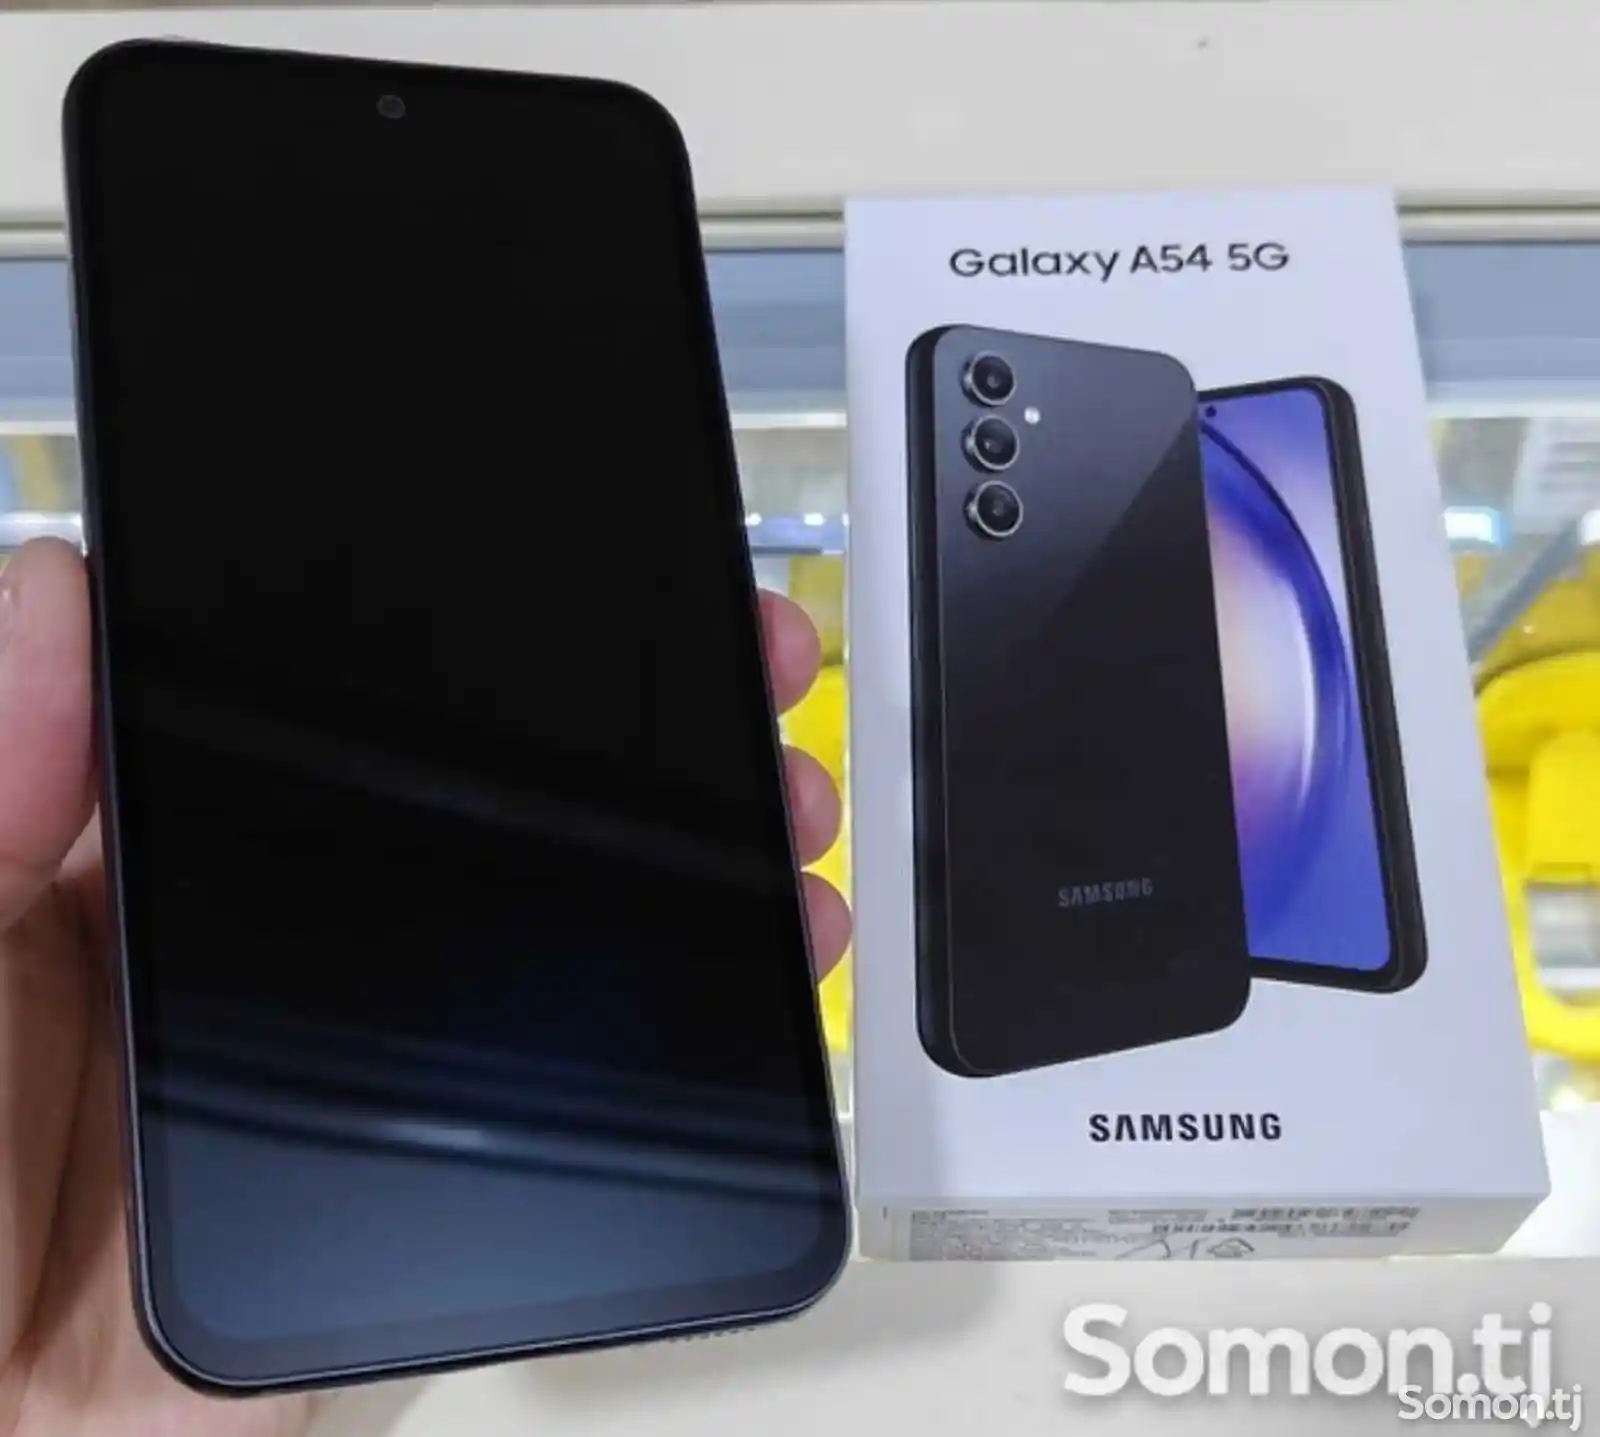 Samsung galaxy A54